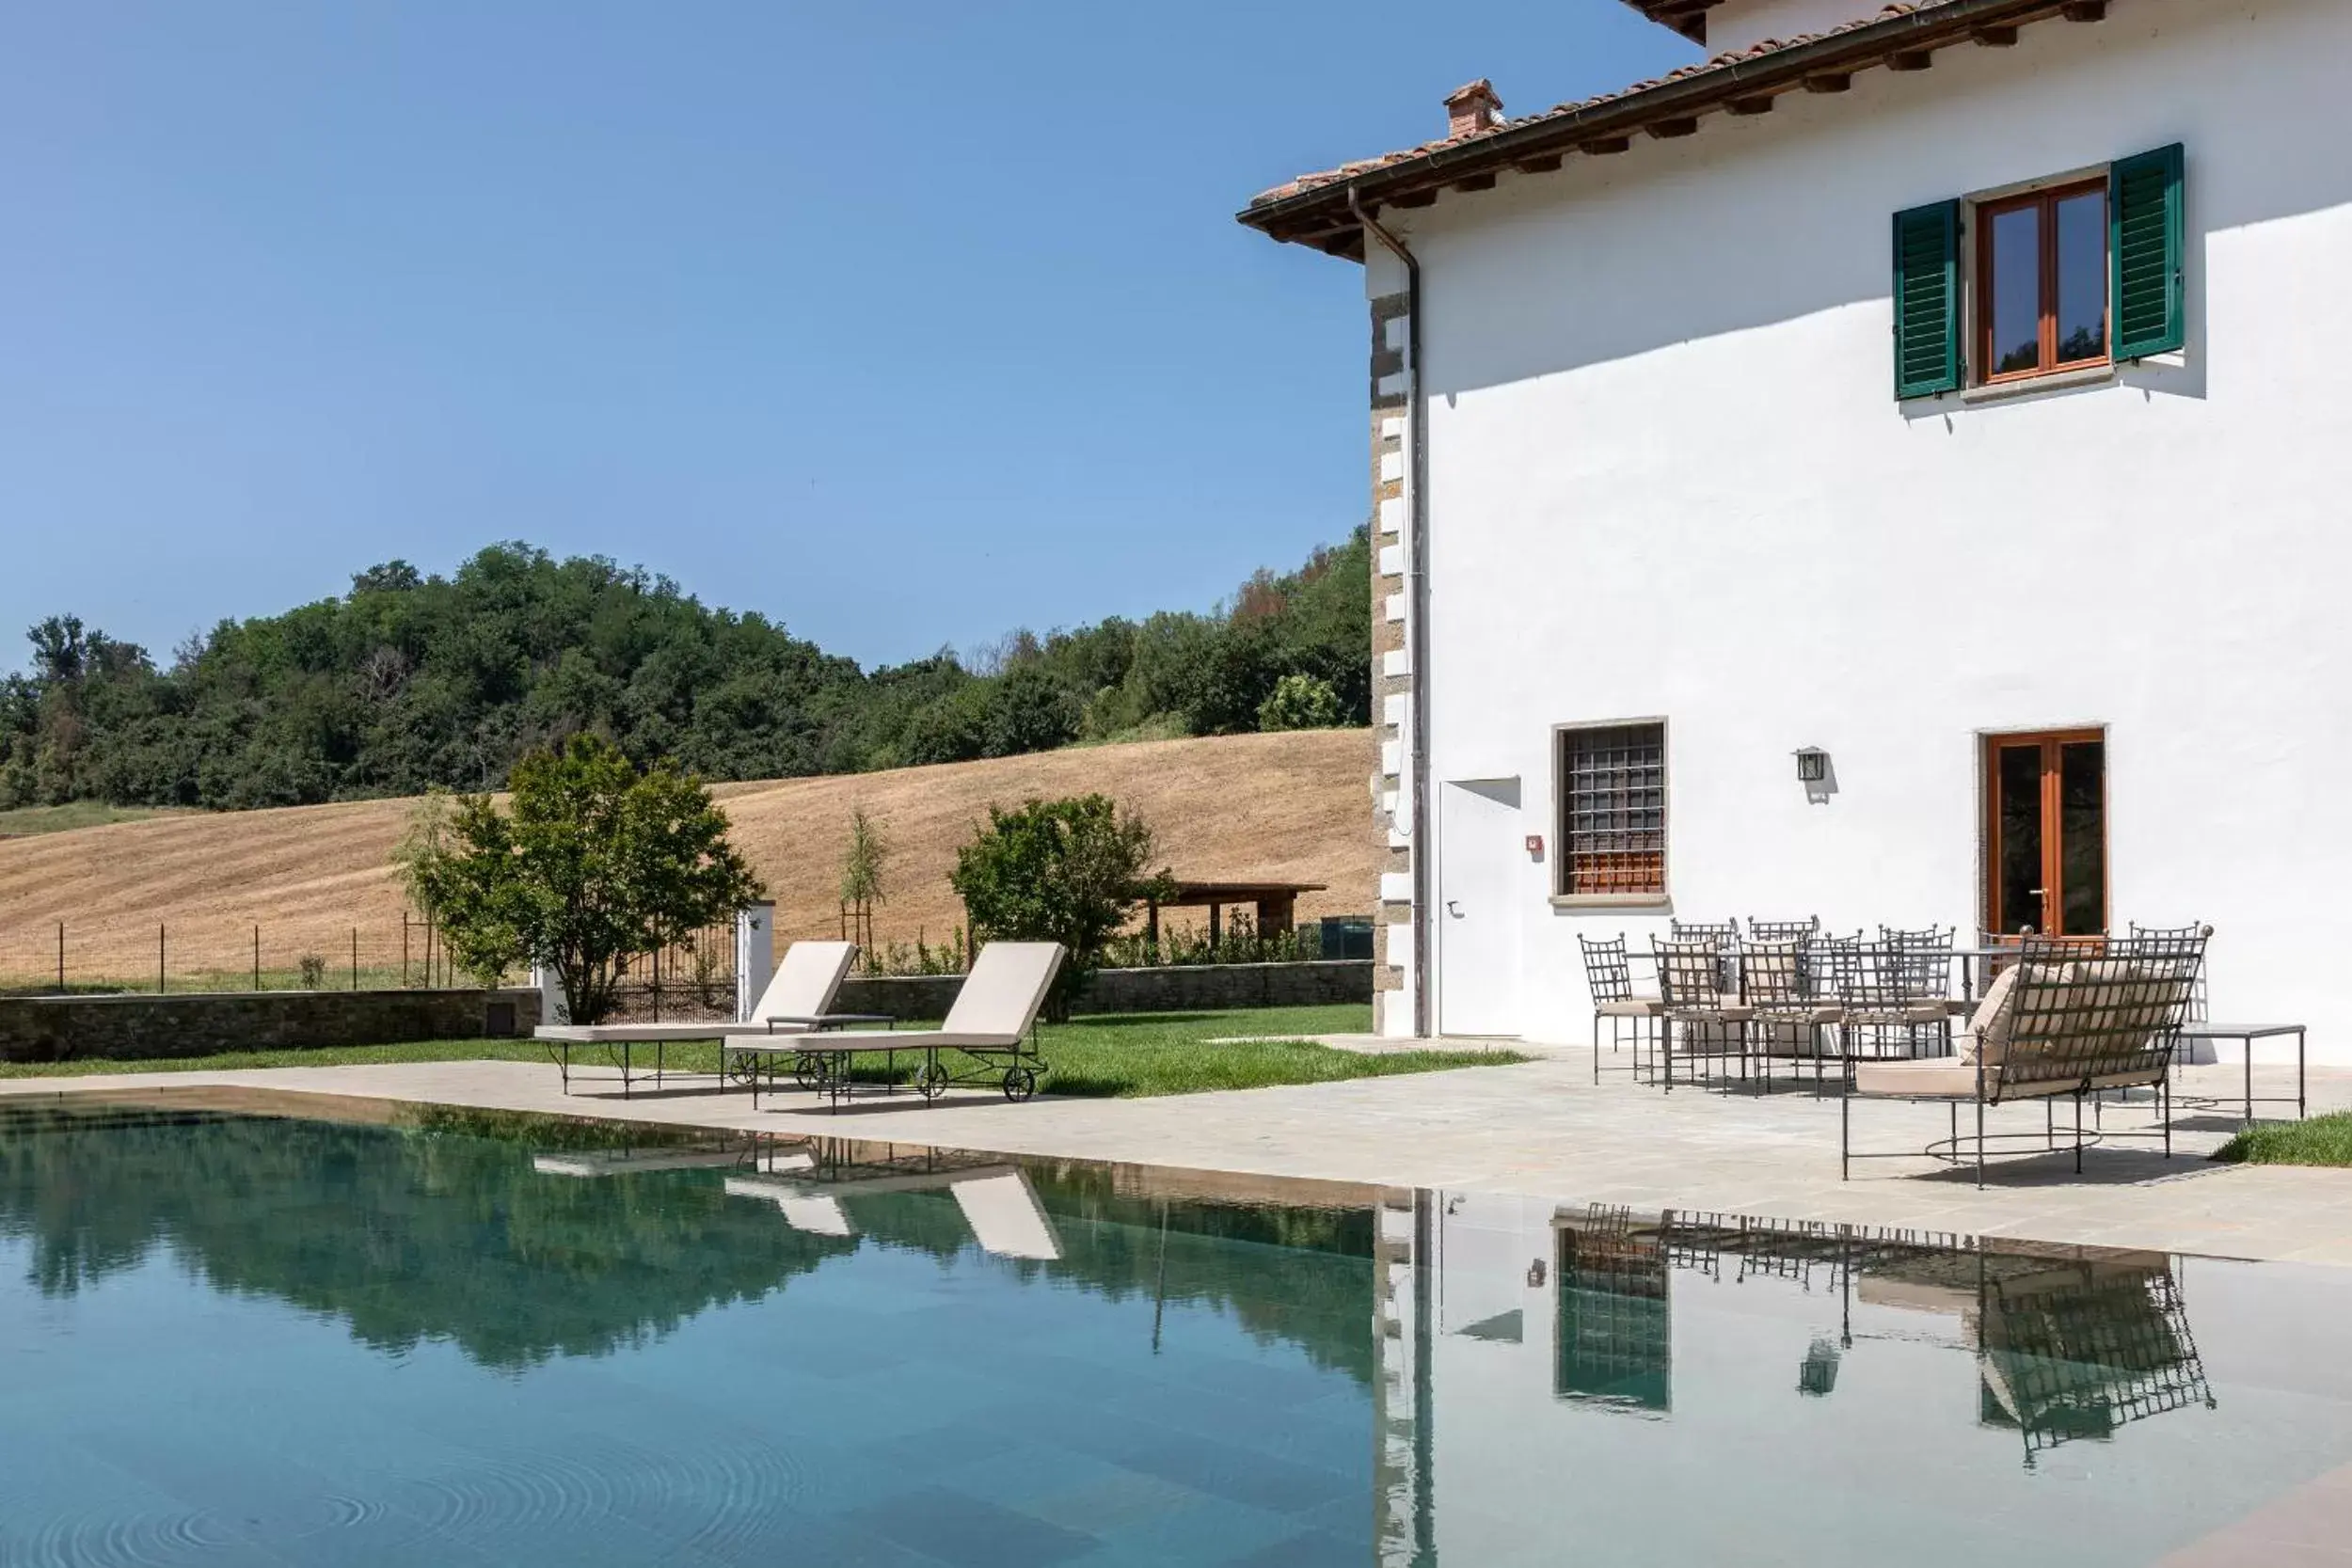 Swimming Pool in VIESCA Suites & Villas Il Borro Toscana